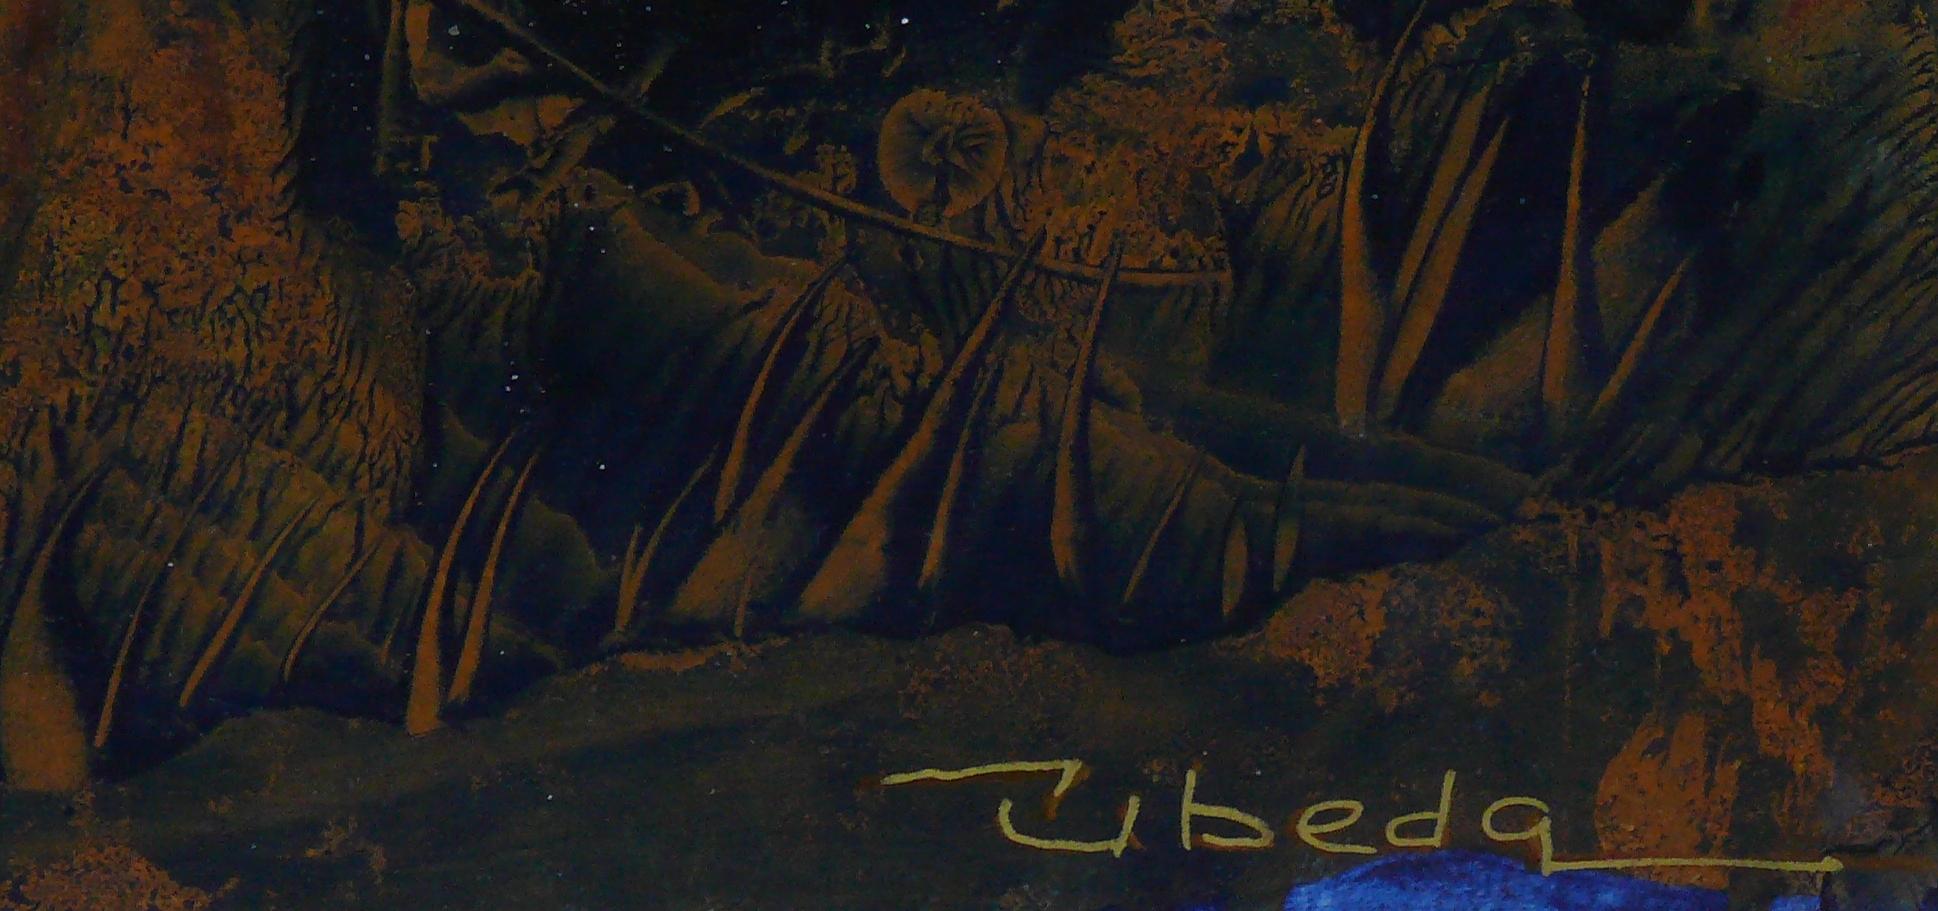 Série Under the sea N 5 beda. Paysage fantastique à l'huile sous-marin. - Painting de Ángel Luis Úbeda